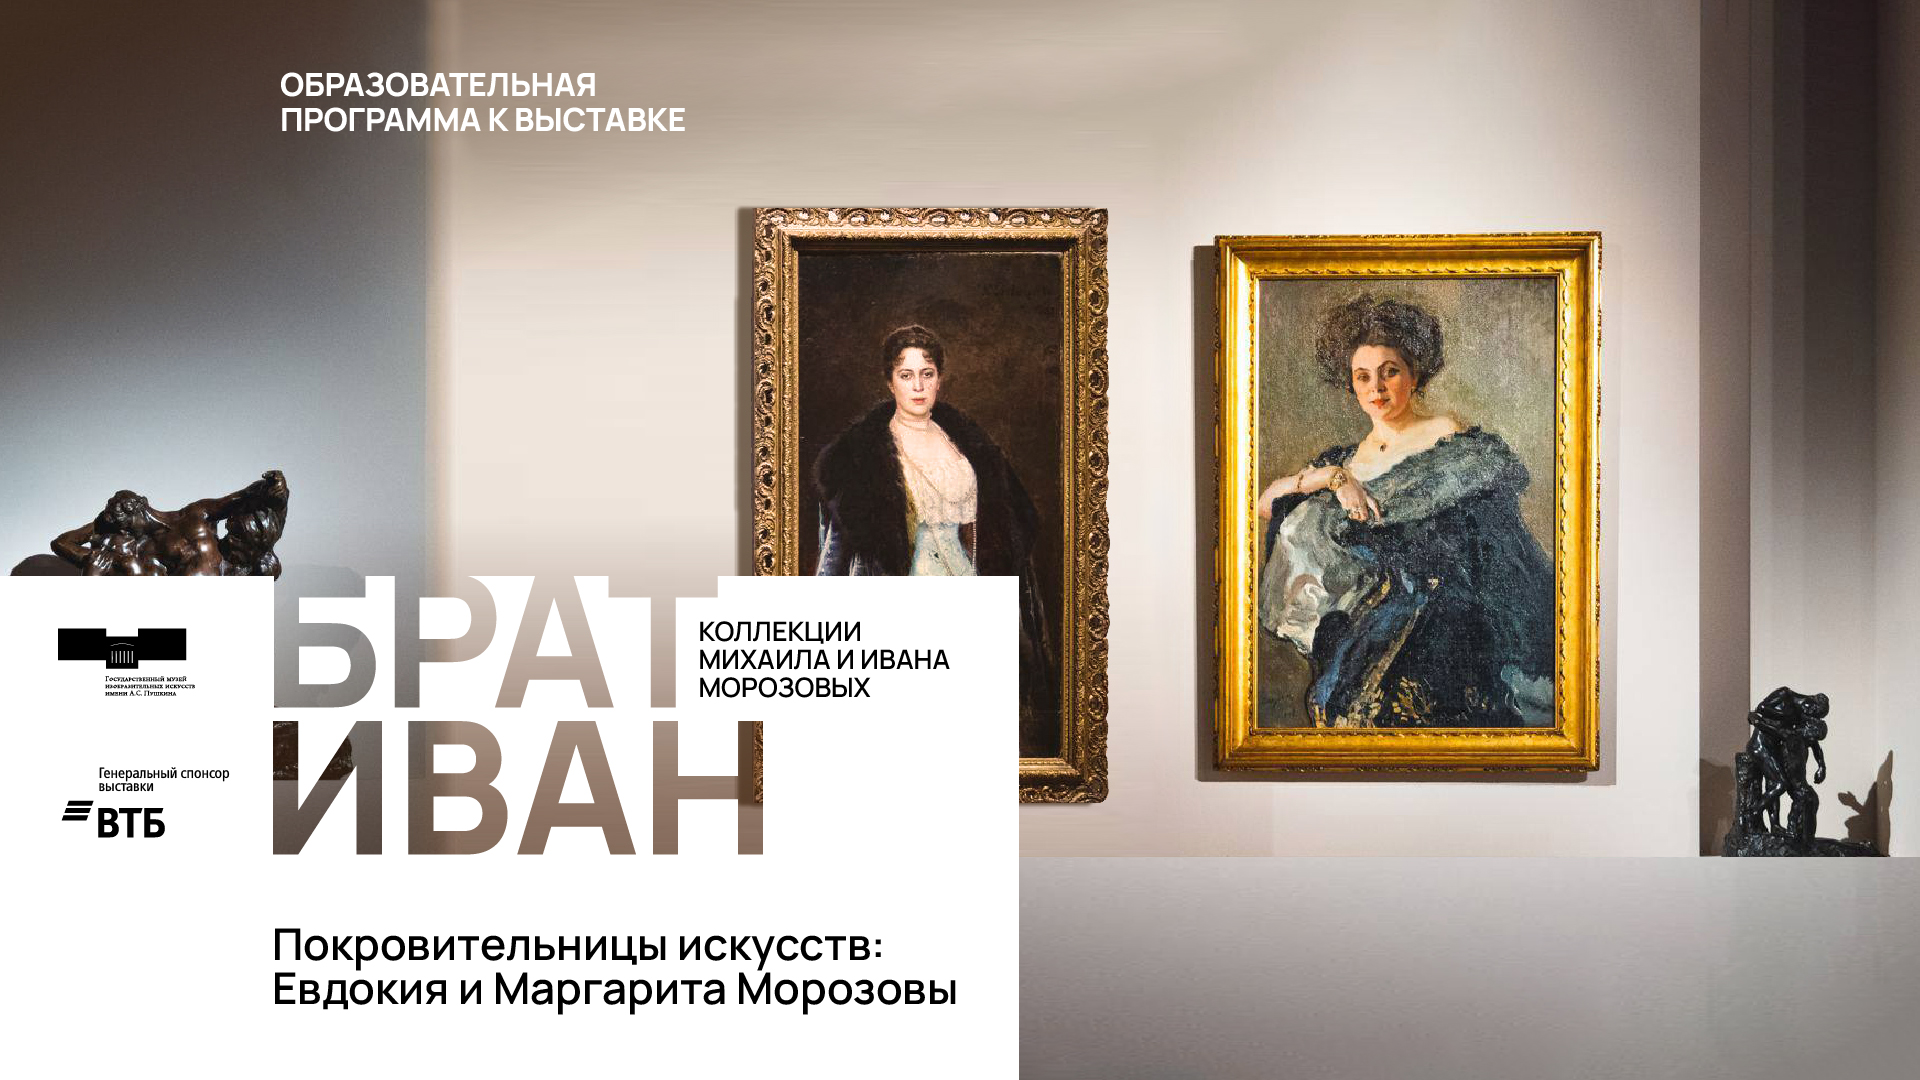 Дискуссия «Покровительницы искусств: Евдокия и Маргарита Морозовы»